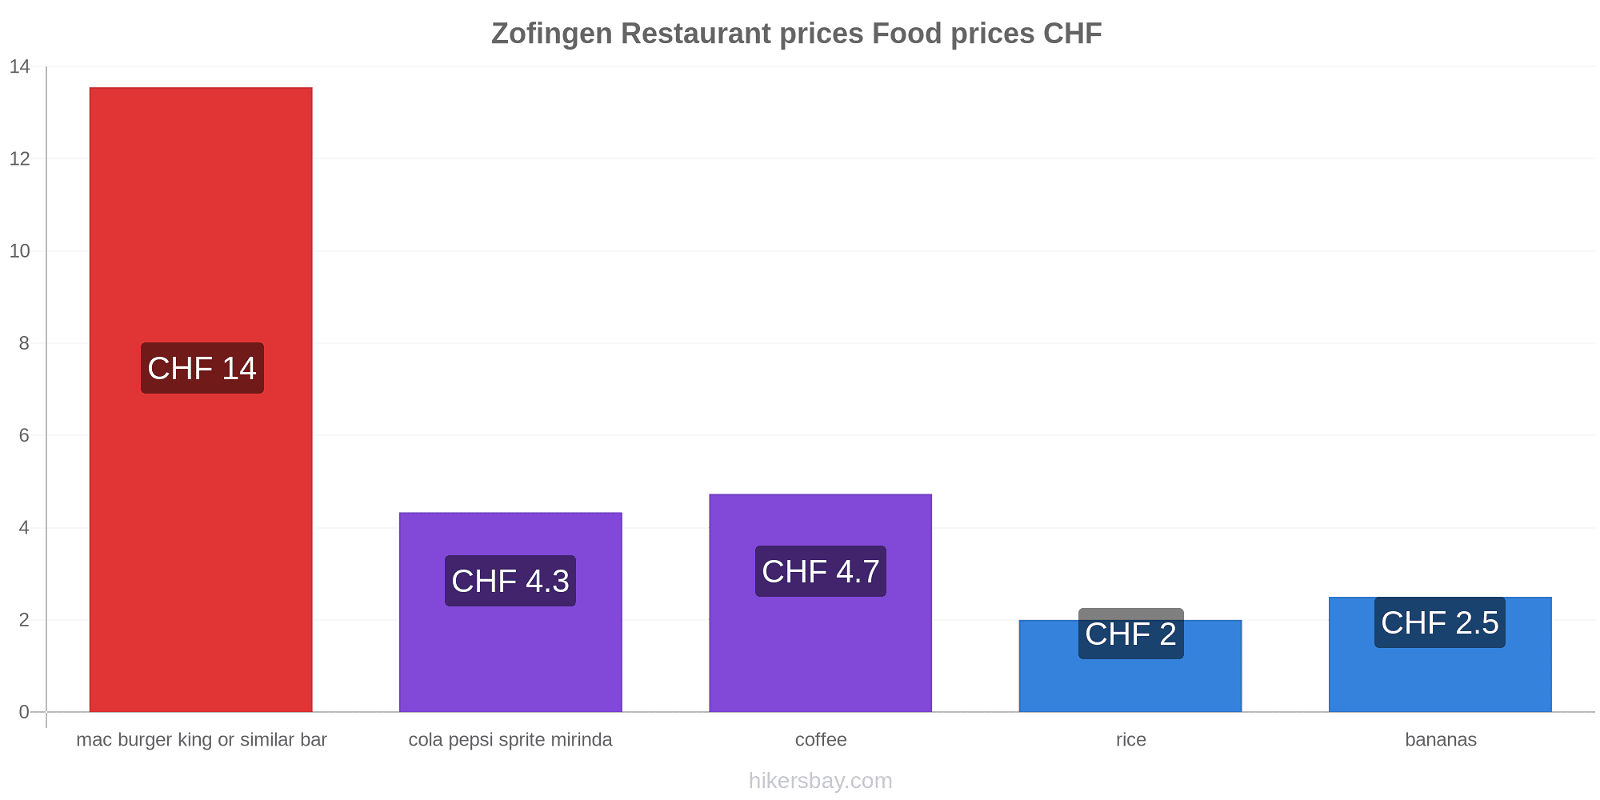 Zofingen price changes hikersbay.com